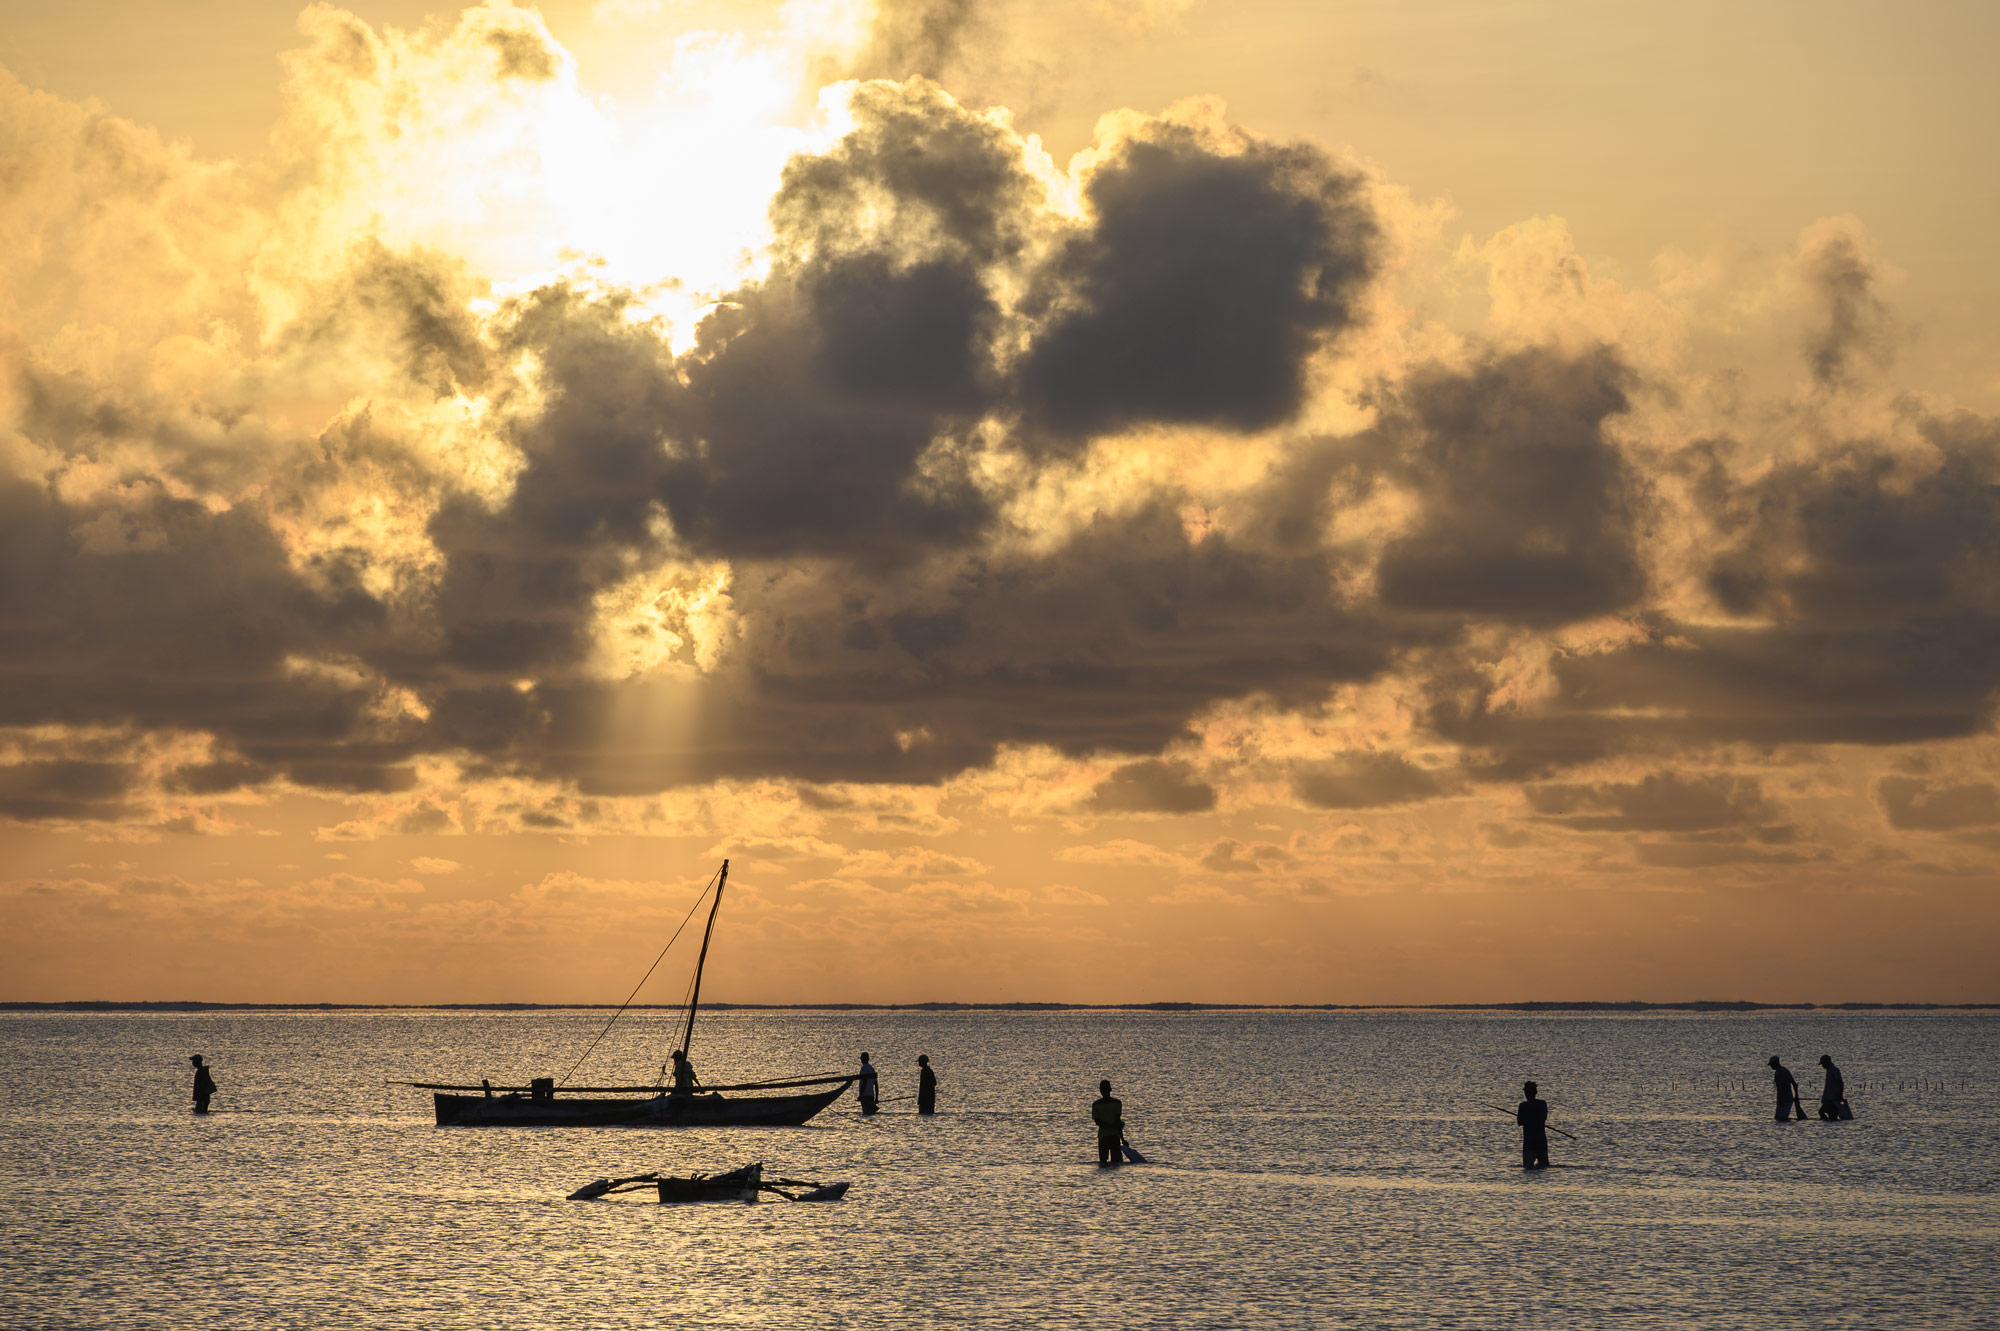 gün batımında, kumsalda balık tutan insanların düşük ışık fotoğraf NIKKOR Z 24-200mm f / 4-6.3 VR ile çekilen